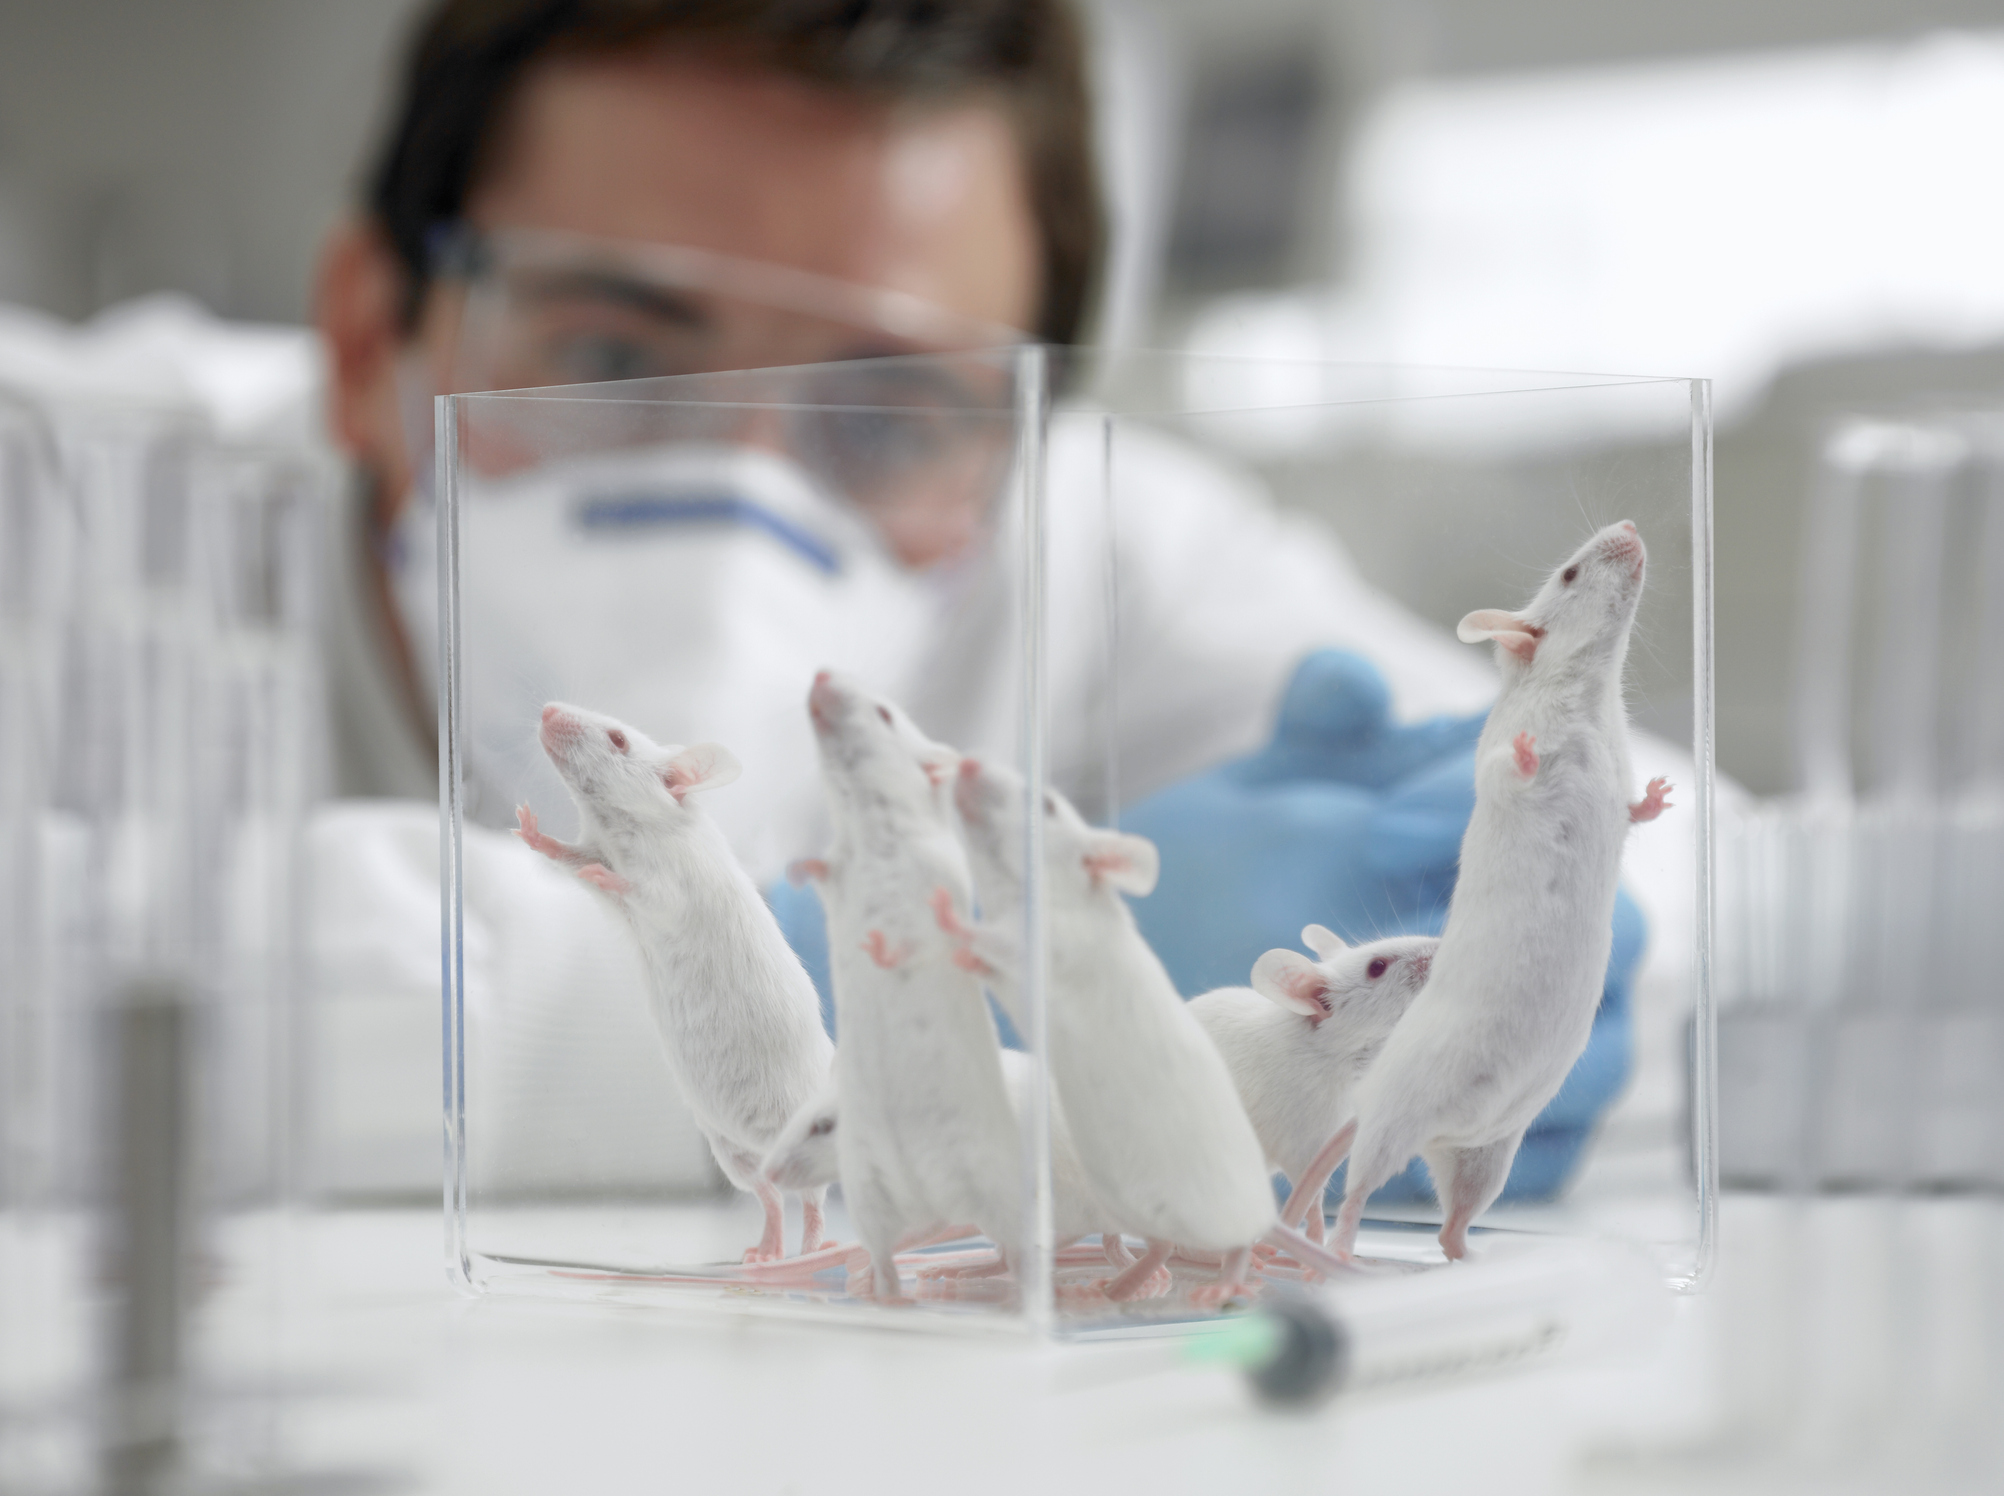 Le vaccin a été testé sur des souris et il a fonctionné. Mais l'innocuité et l'efficacité chez l'homme devront être démontrées (Getty Images)